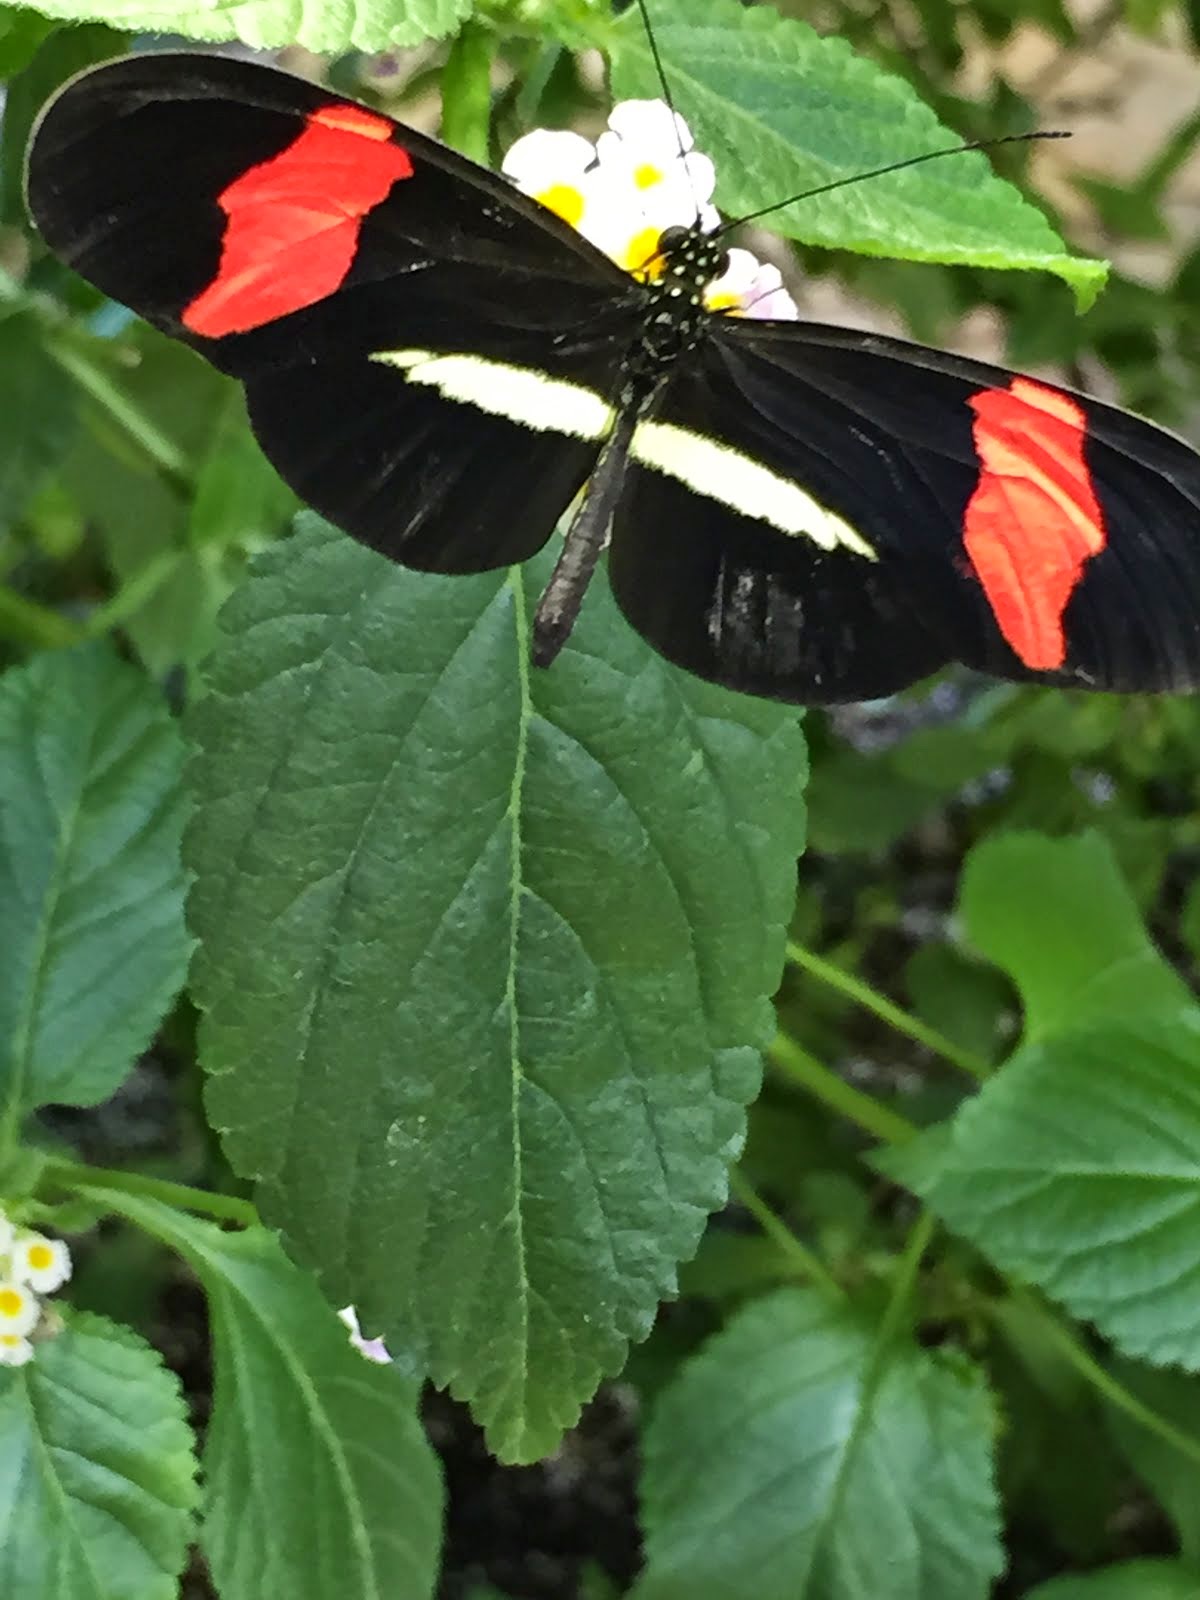 Butterfly exhibit